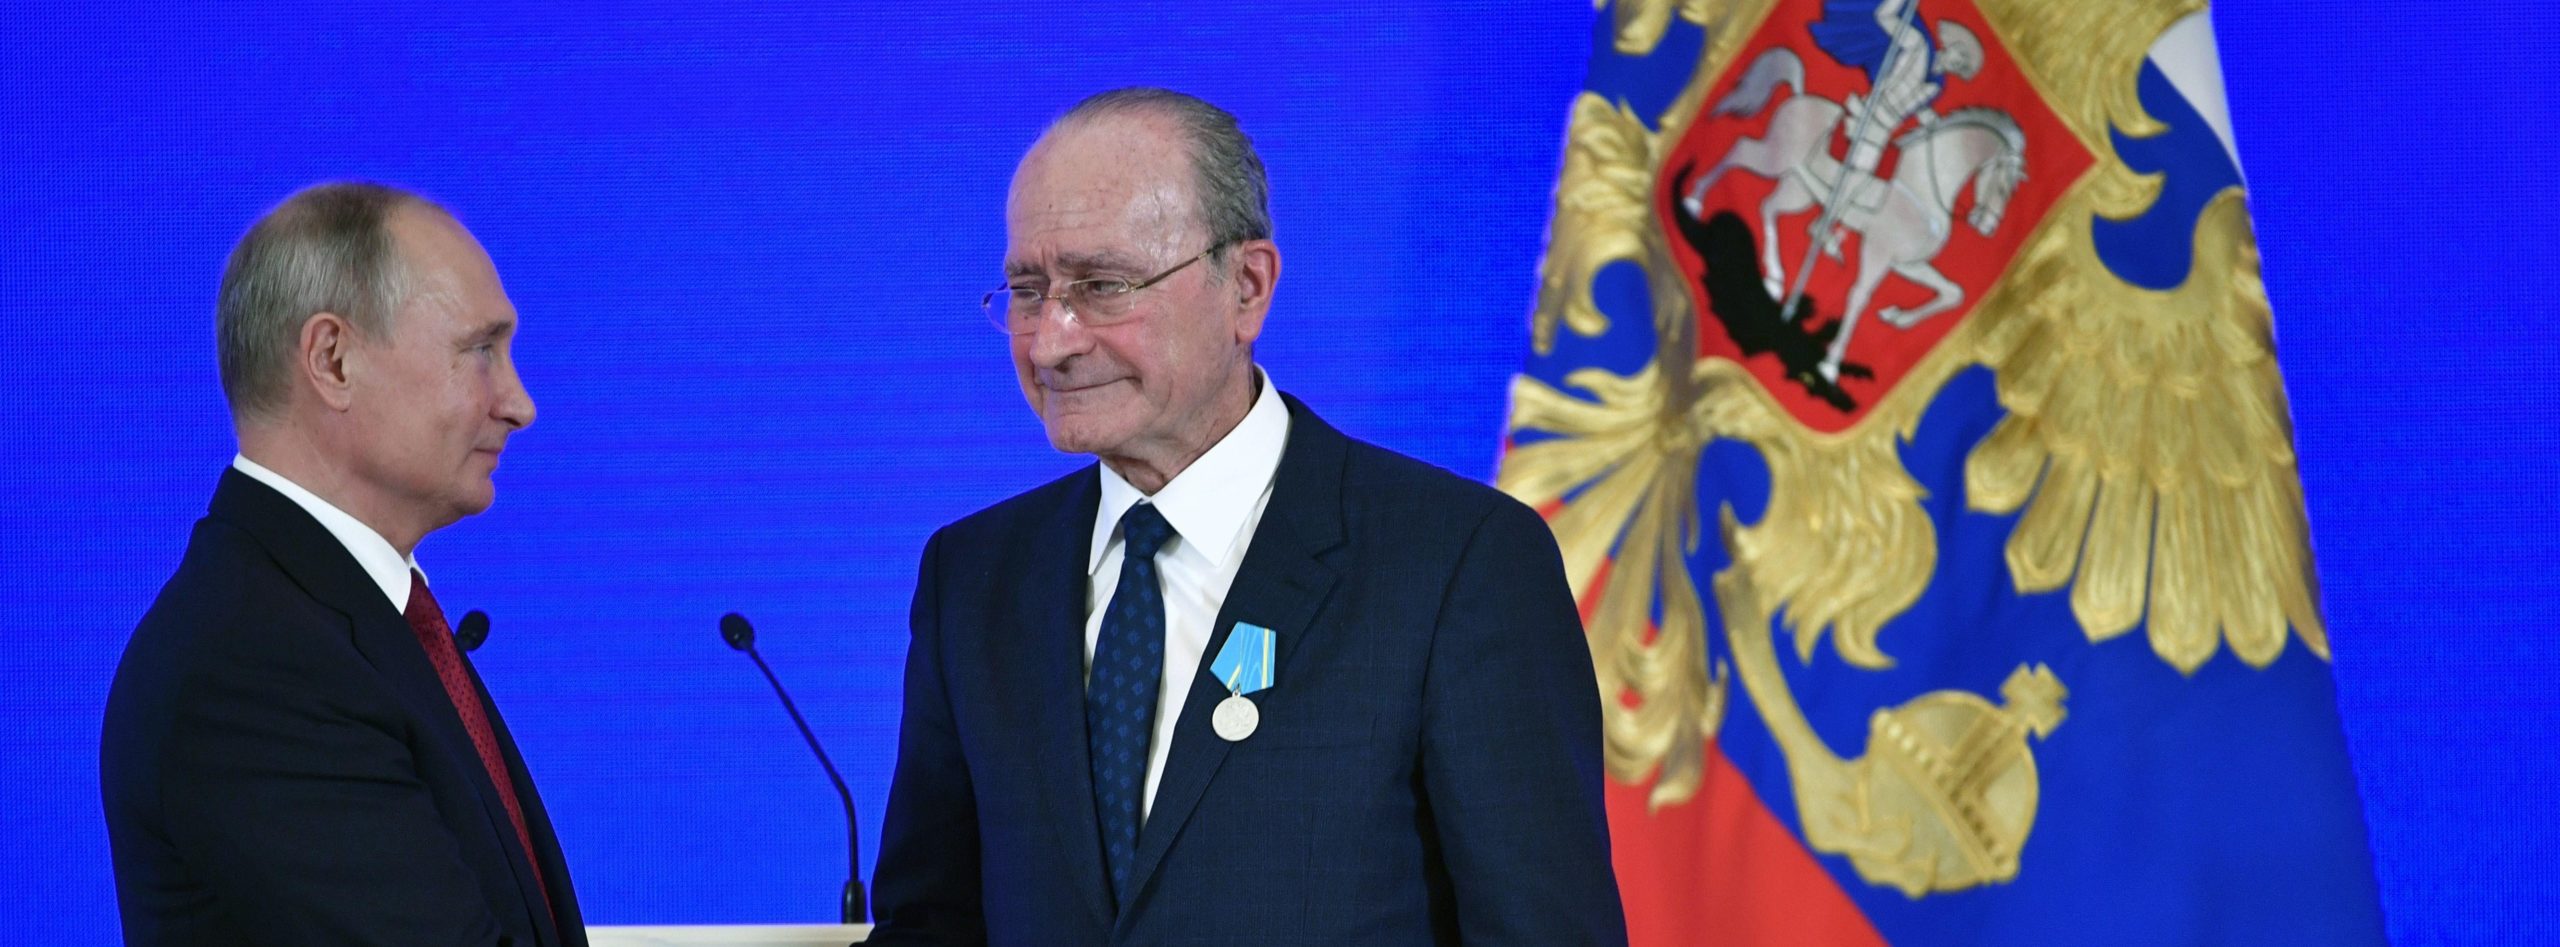 El alcalde de Málaga recibe la Medalla Pushkin en el Kremlin